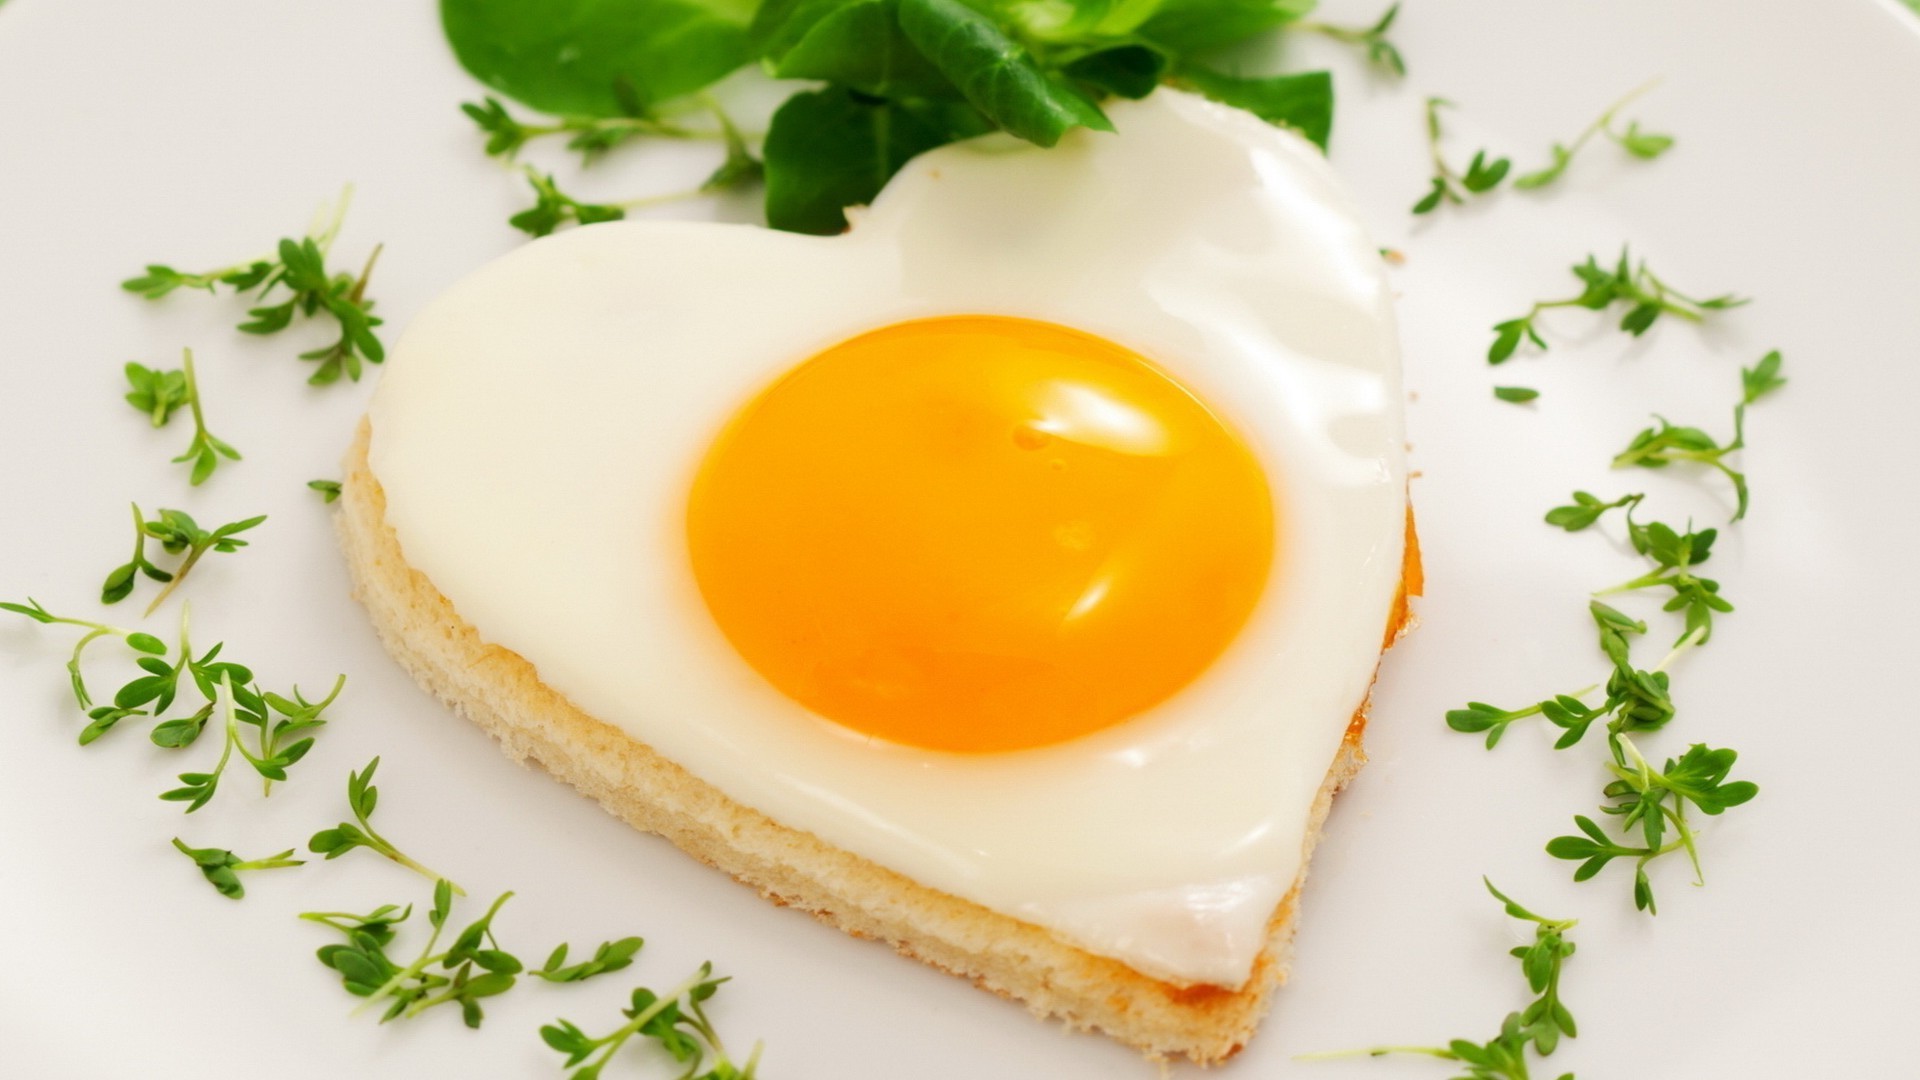 завтраки яйцо яичный желток еда питание тост вкусные молочными продуктами рассвет питание обед приготовление лист хлеб масло здоровый плиты холестерин